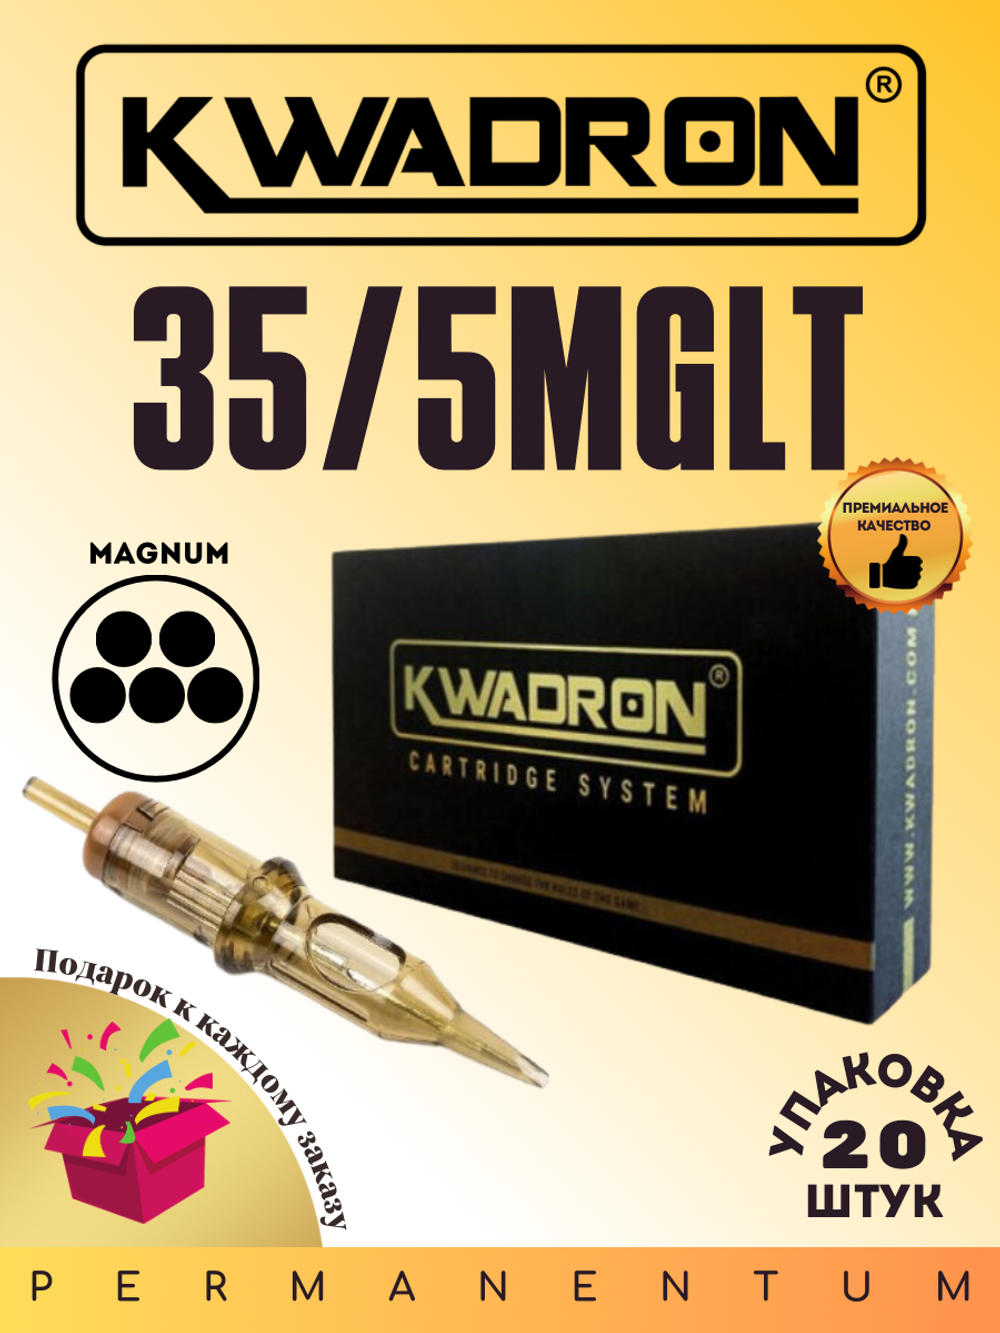 Картридж для татуажа "KWADRON Magnum 35/5MGLT" упаковка 20 шт.